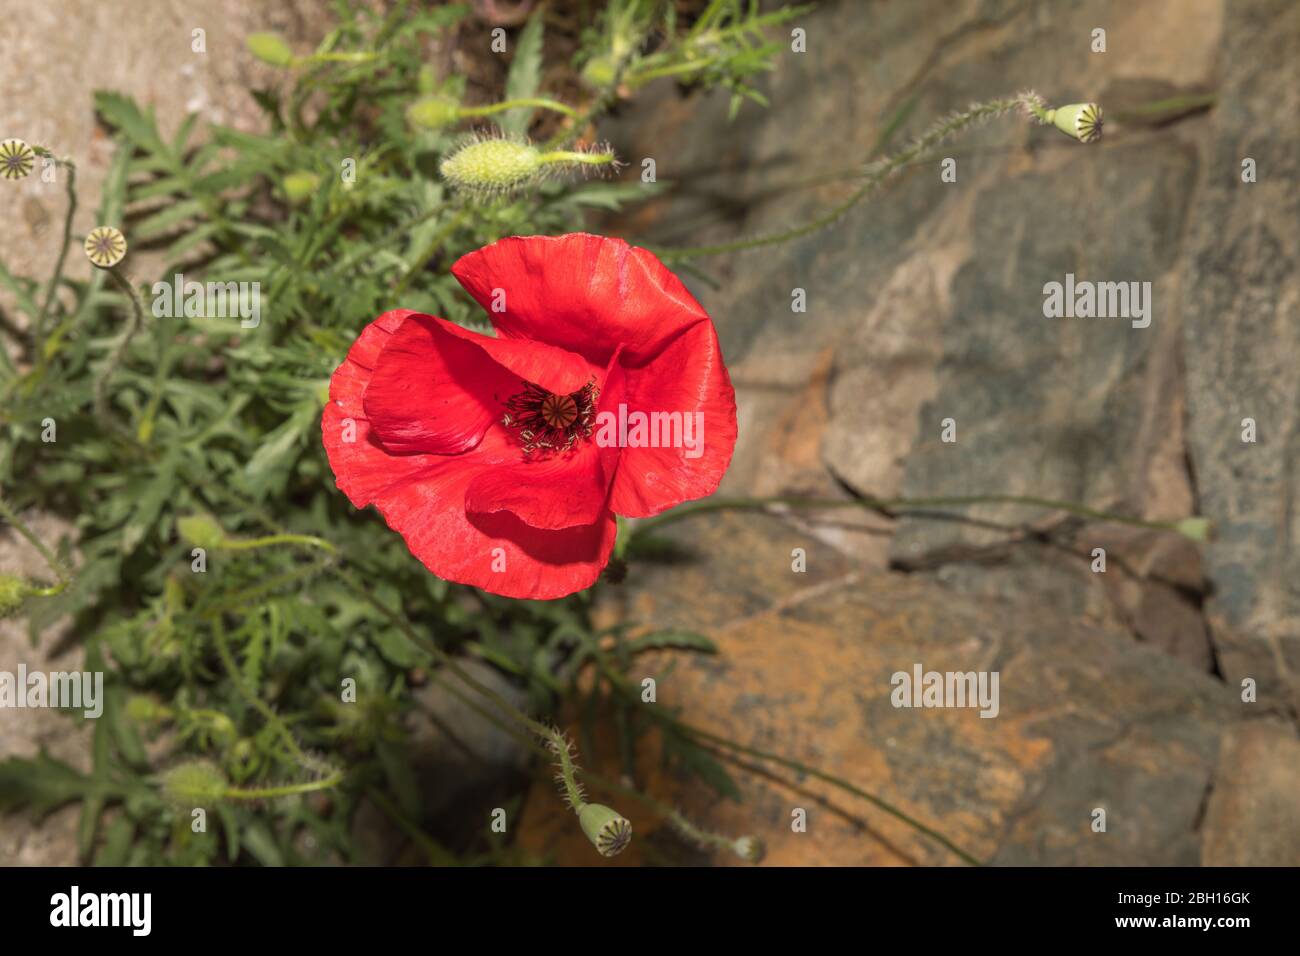 Singola testa di fiore di papavero rosso in piena fioritura. Immagine stock. Foto Stock